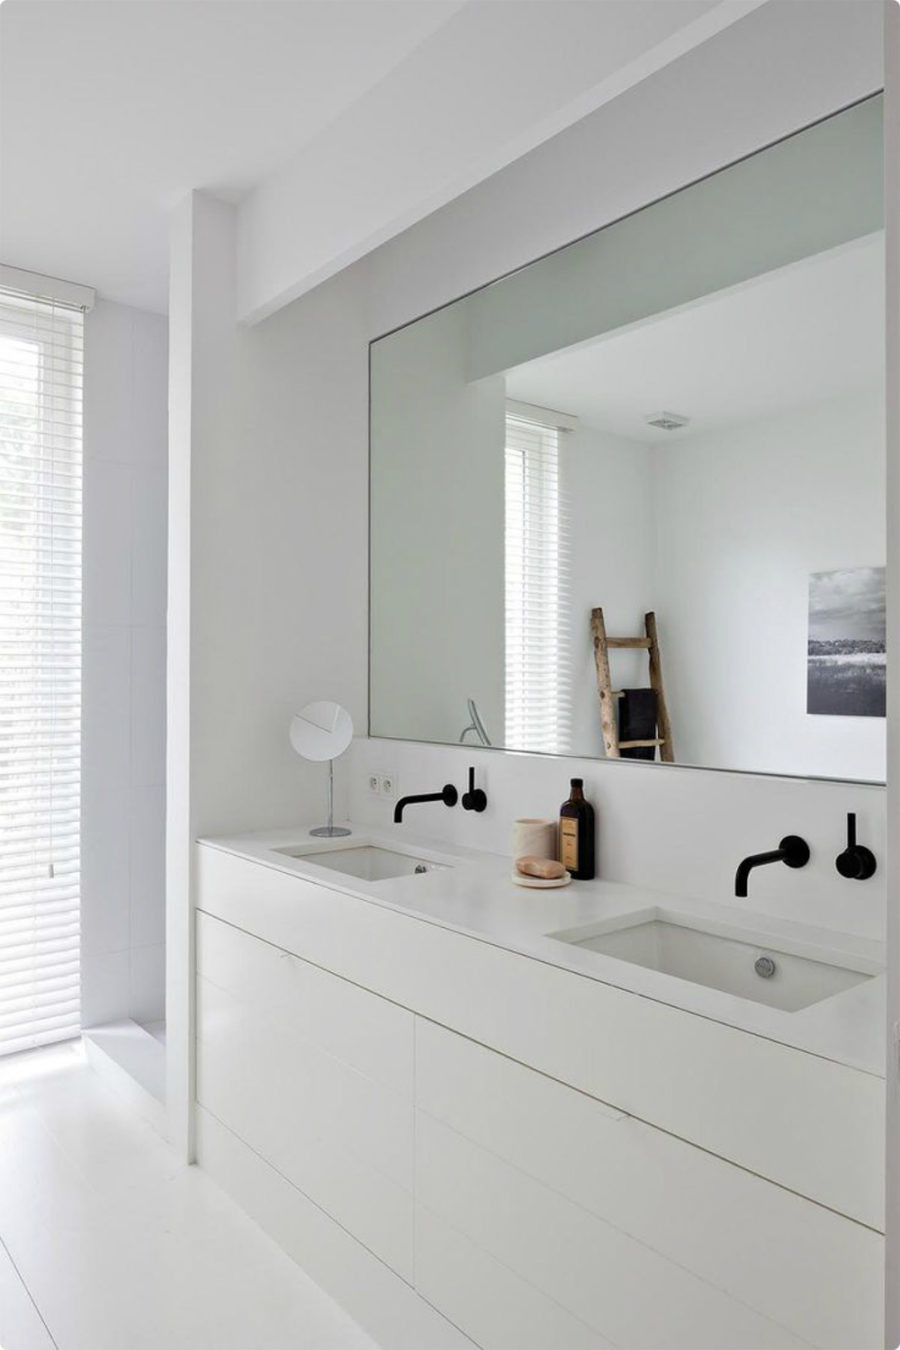 Large Bathroom Mirror
 Big Bathroom Mirror Trend in Real Interiors